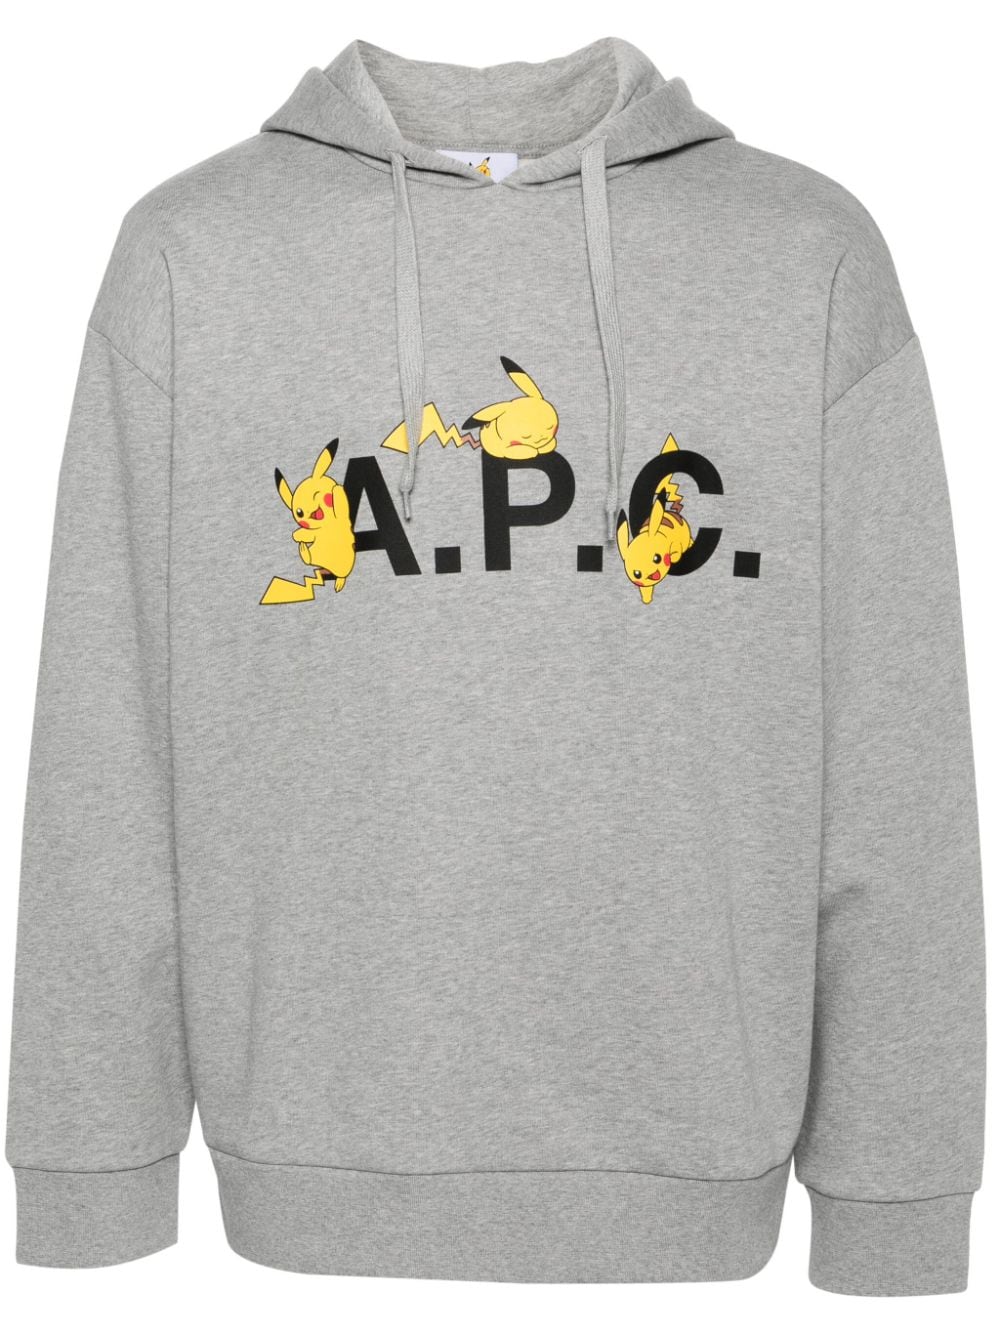 A.P.C. Pikachu Hoodie - Grau von A.P.C.